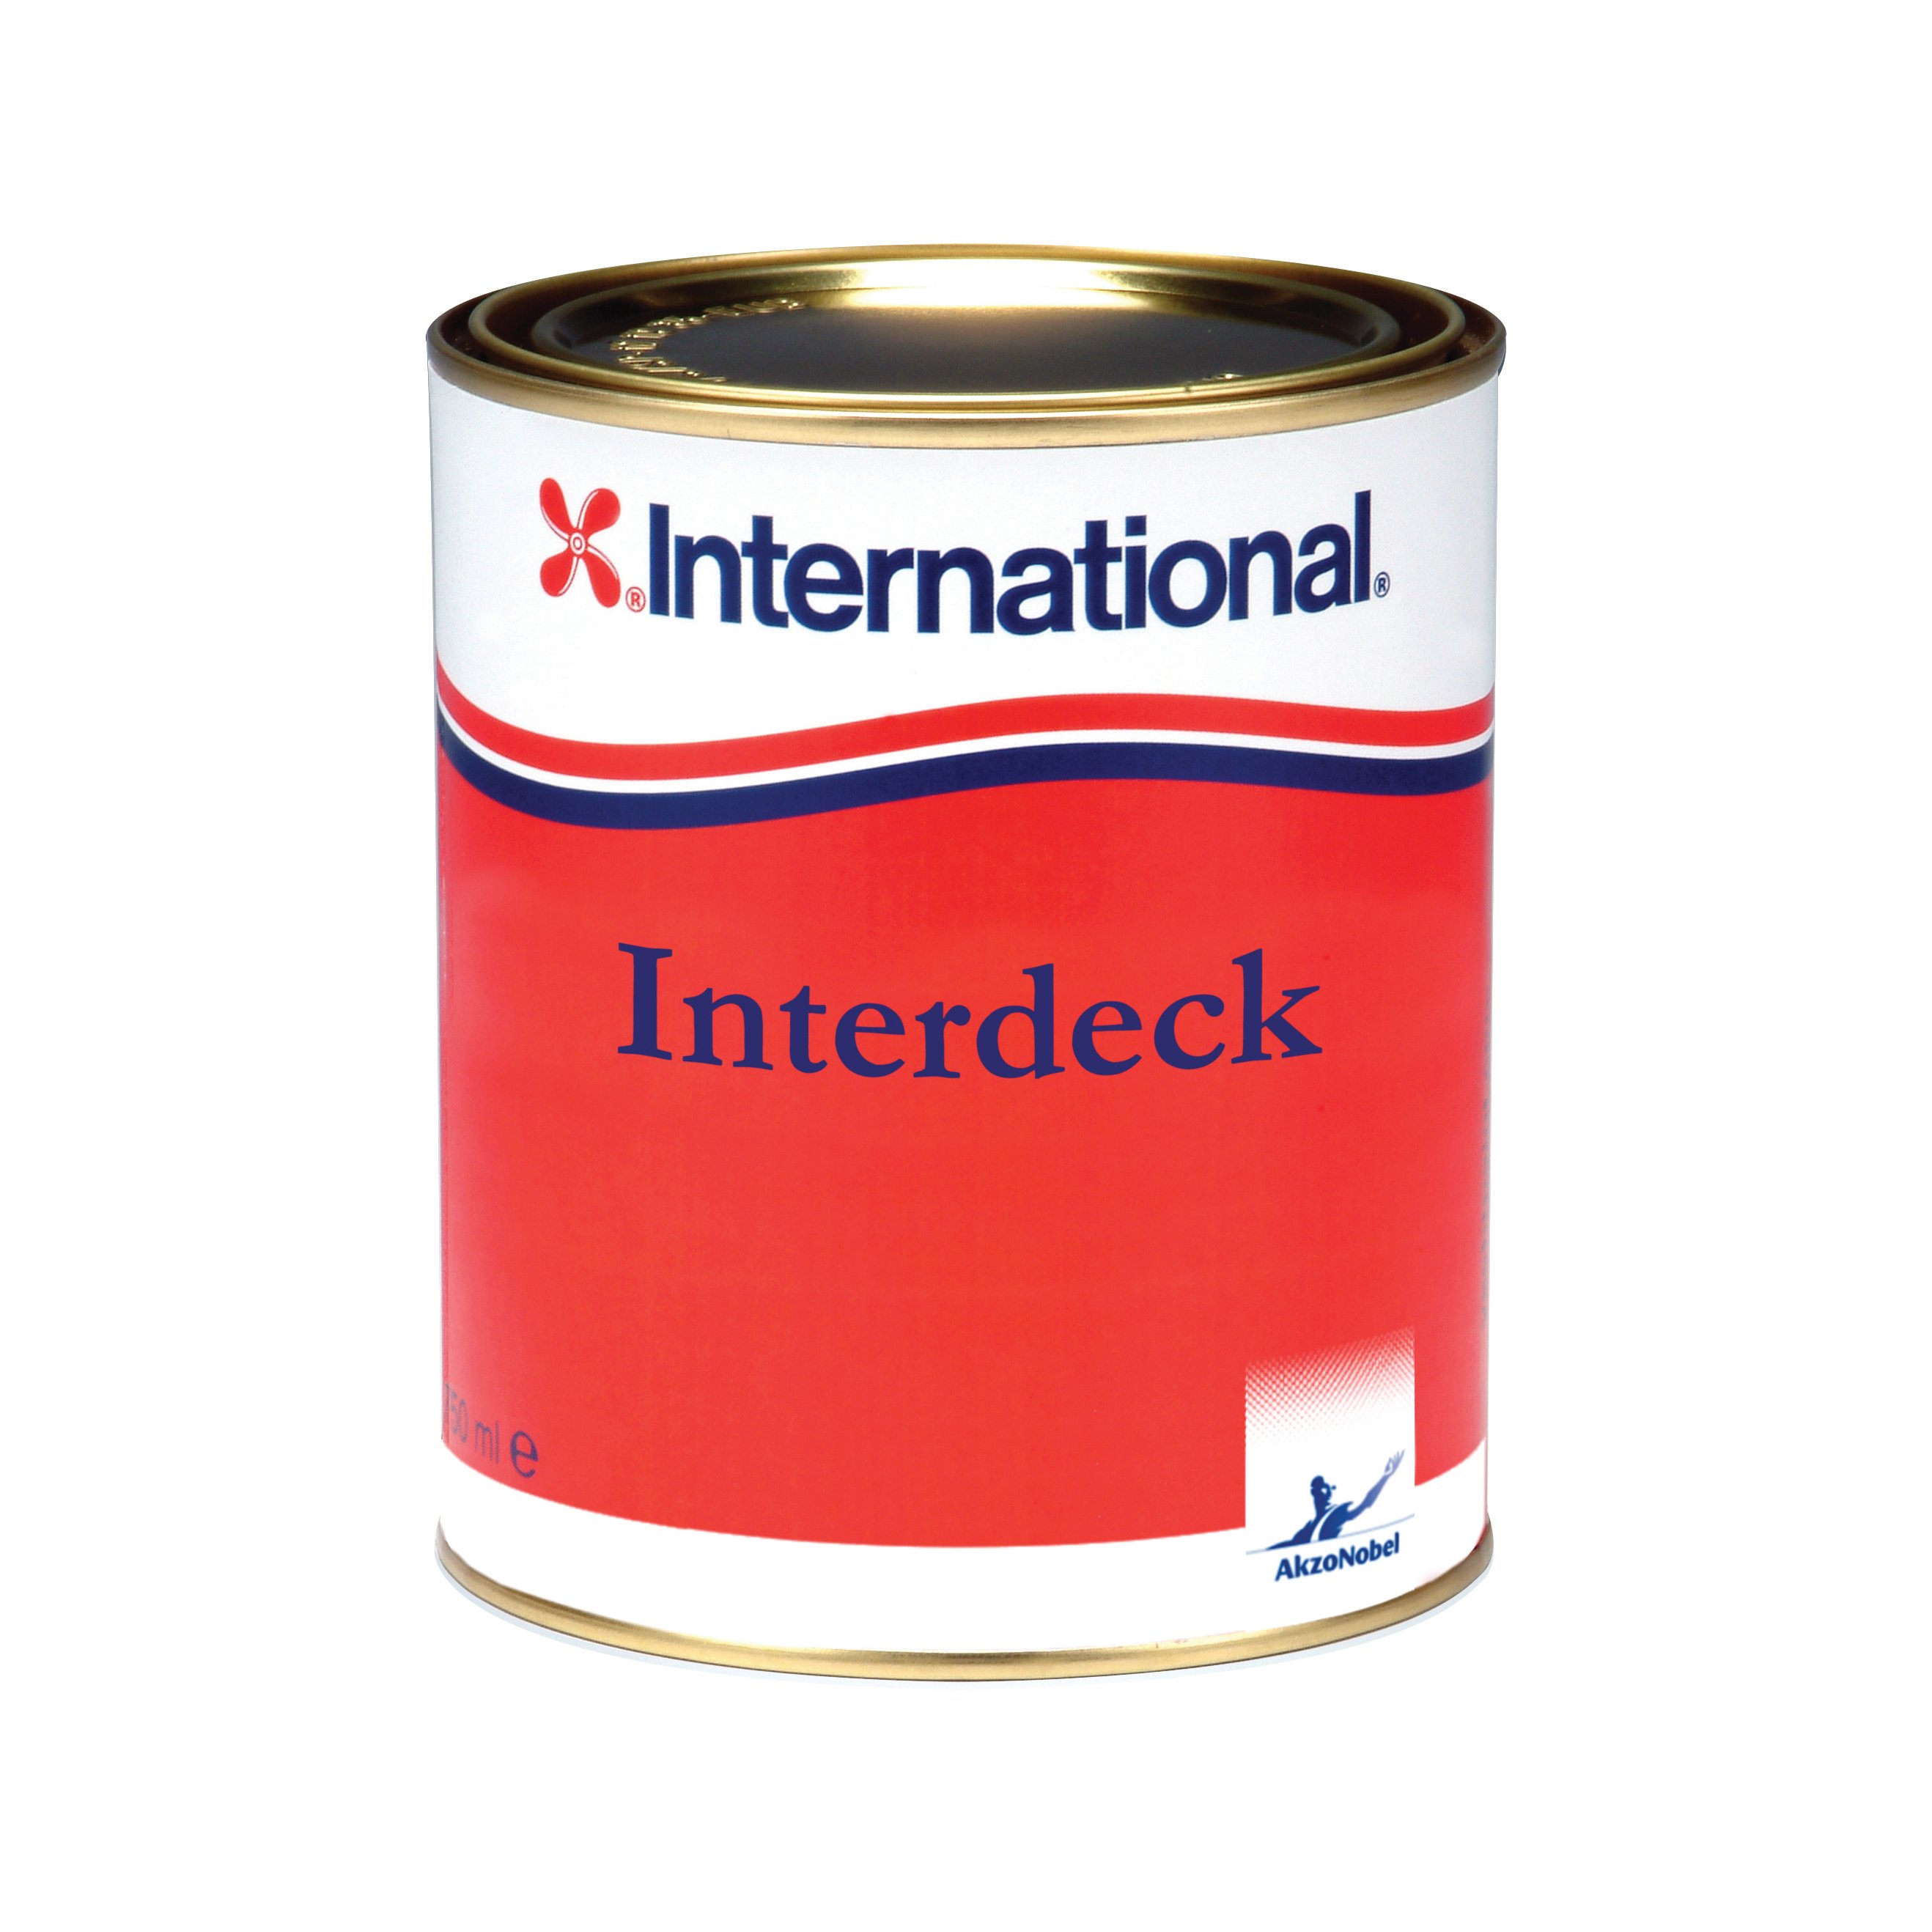 International Interdeck aflak - blauw 923, 750ml